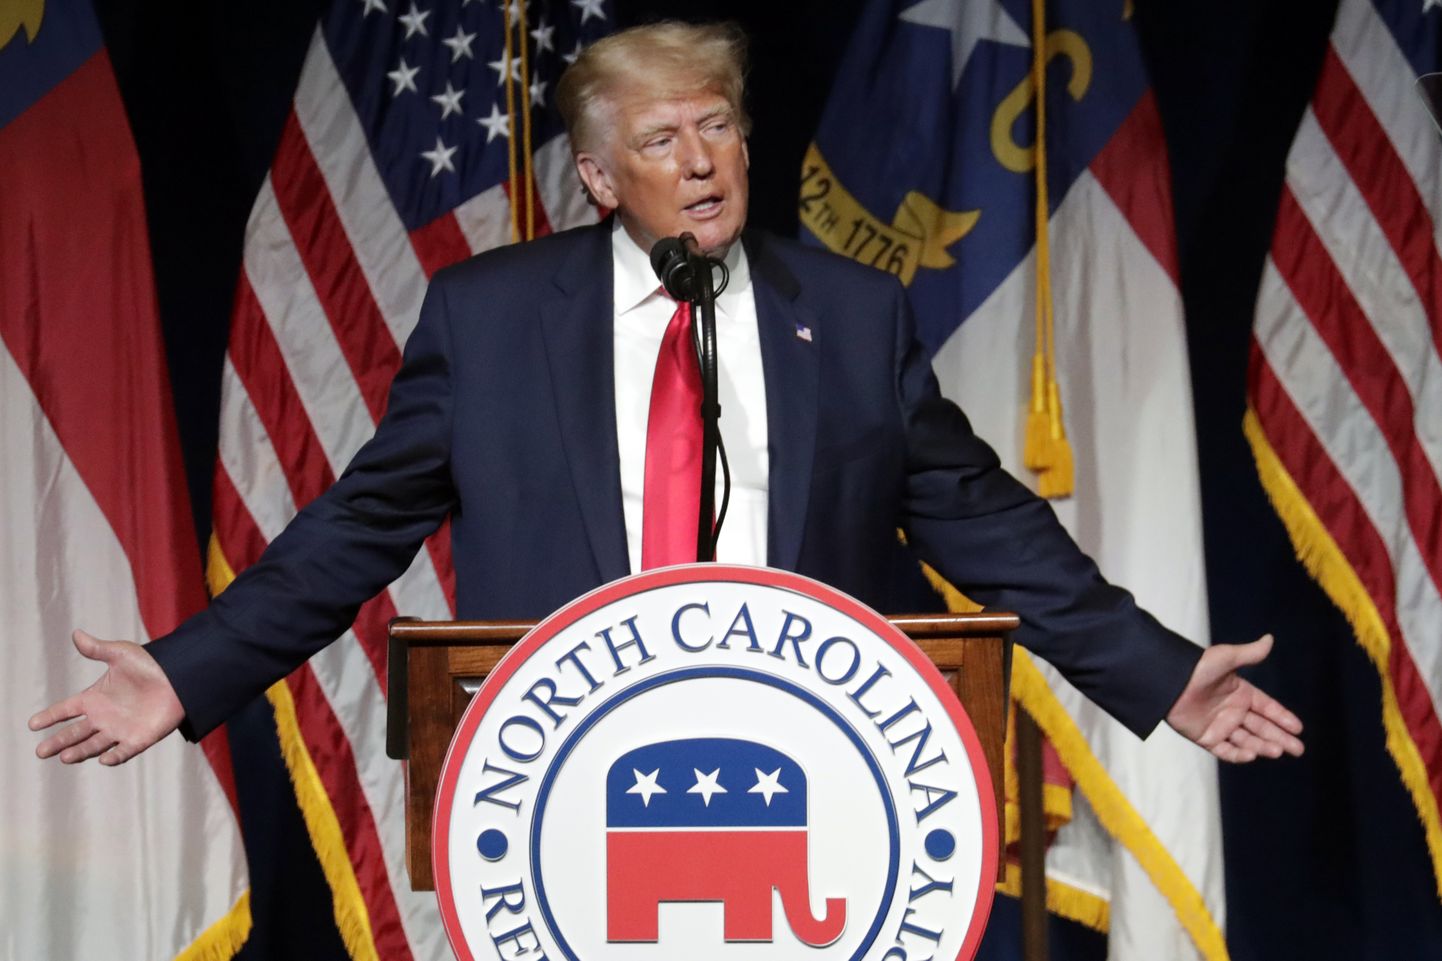 USA endine president Donald Trump esinemas Põhja-Carolina vabariiklastele.